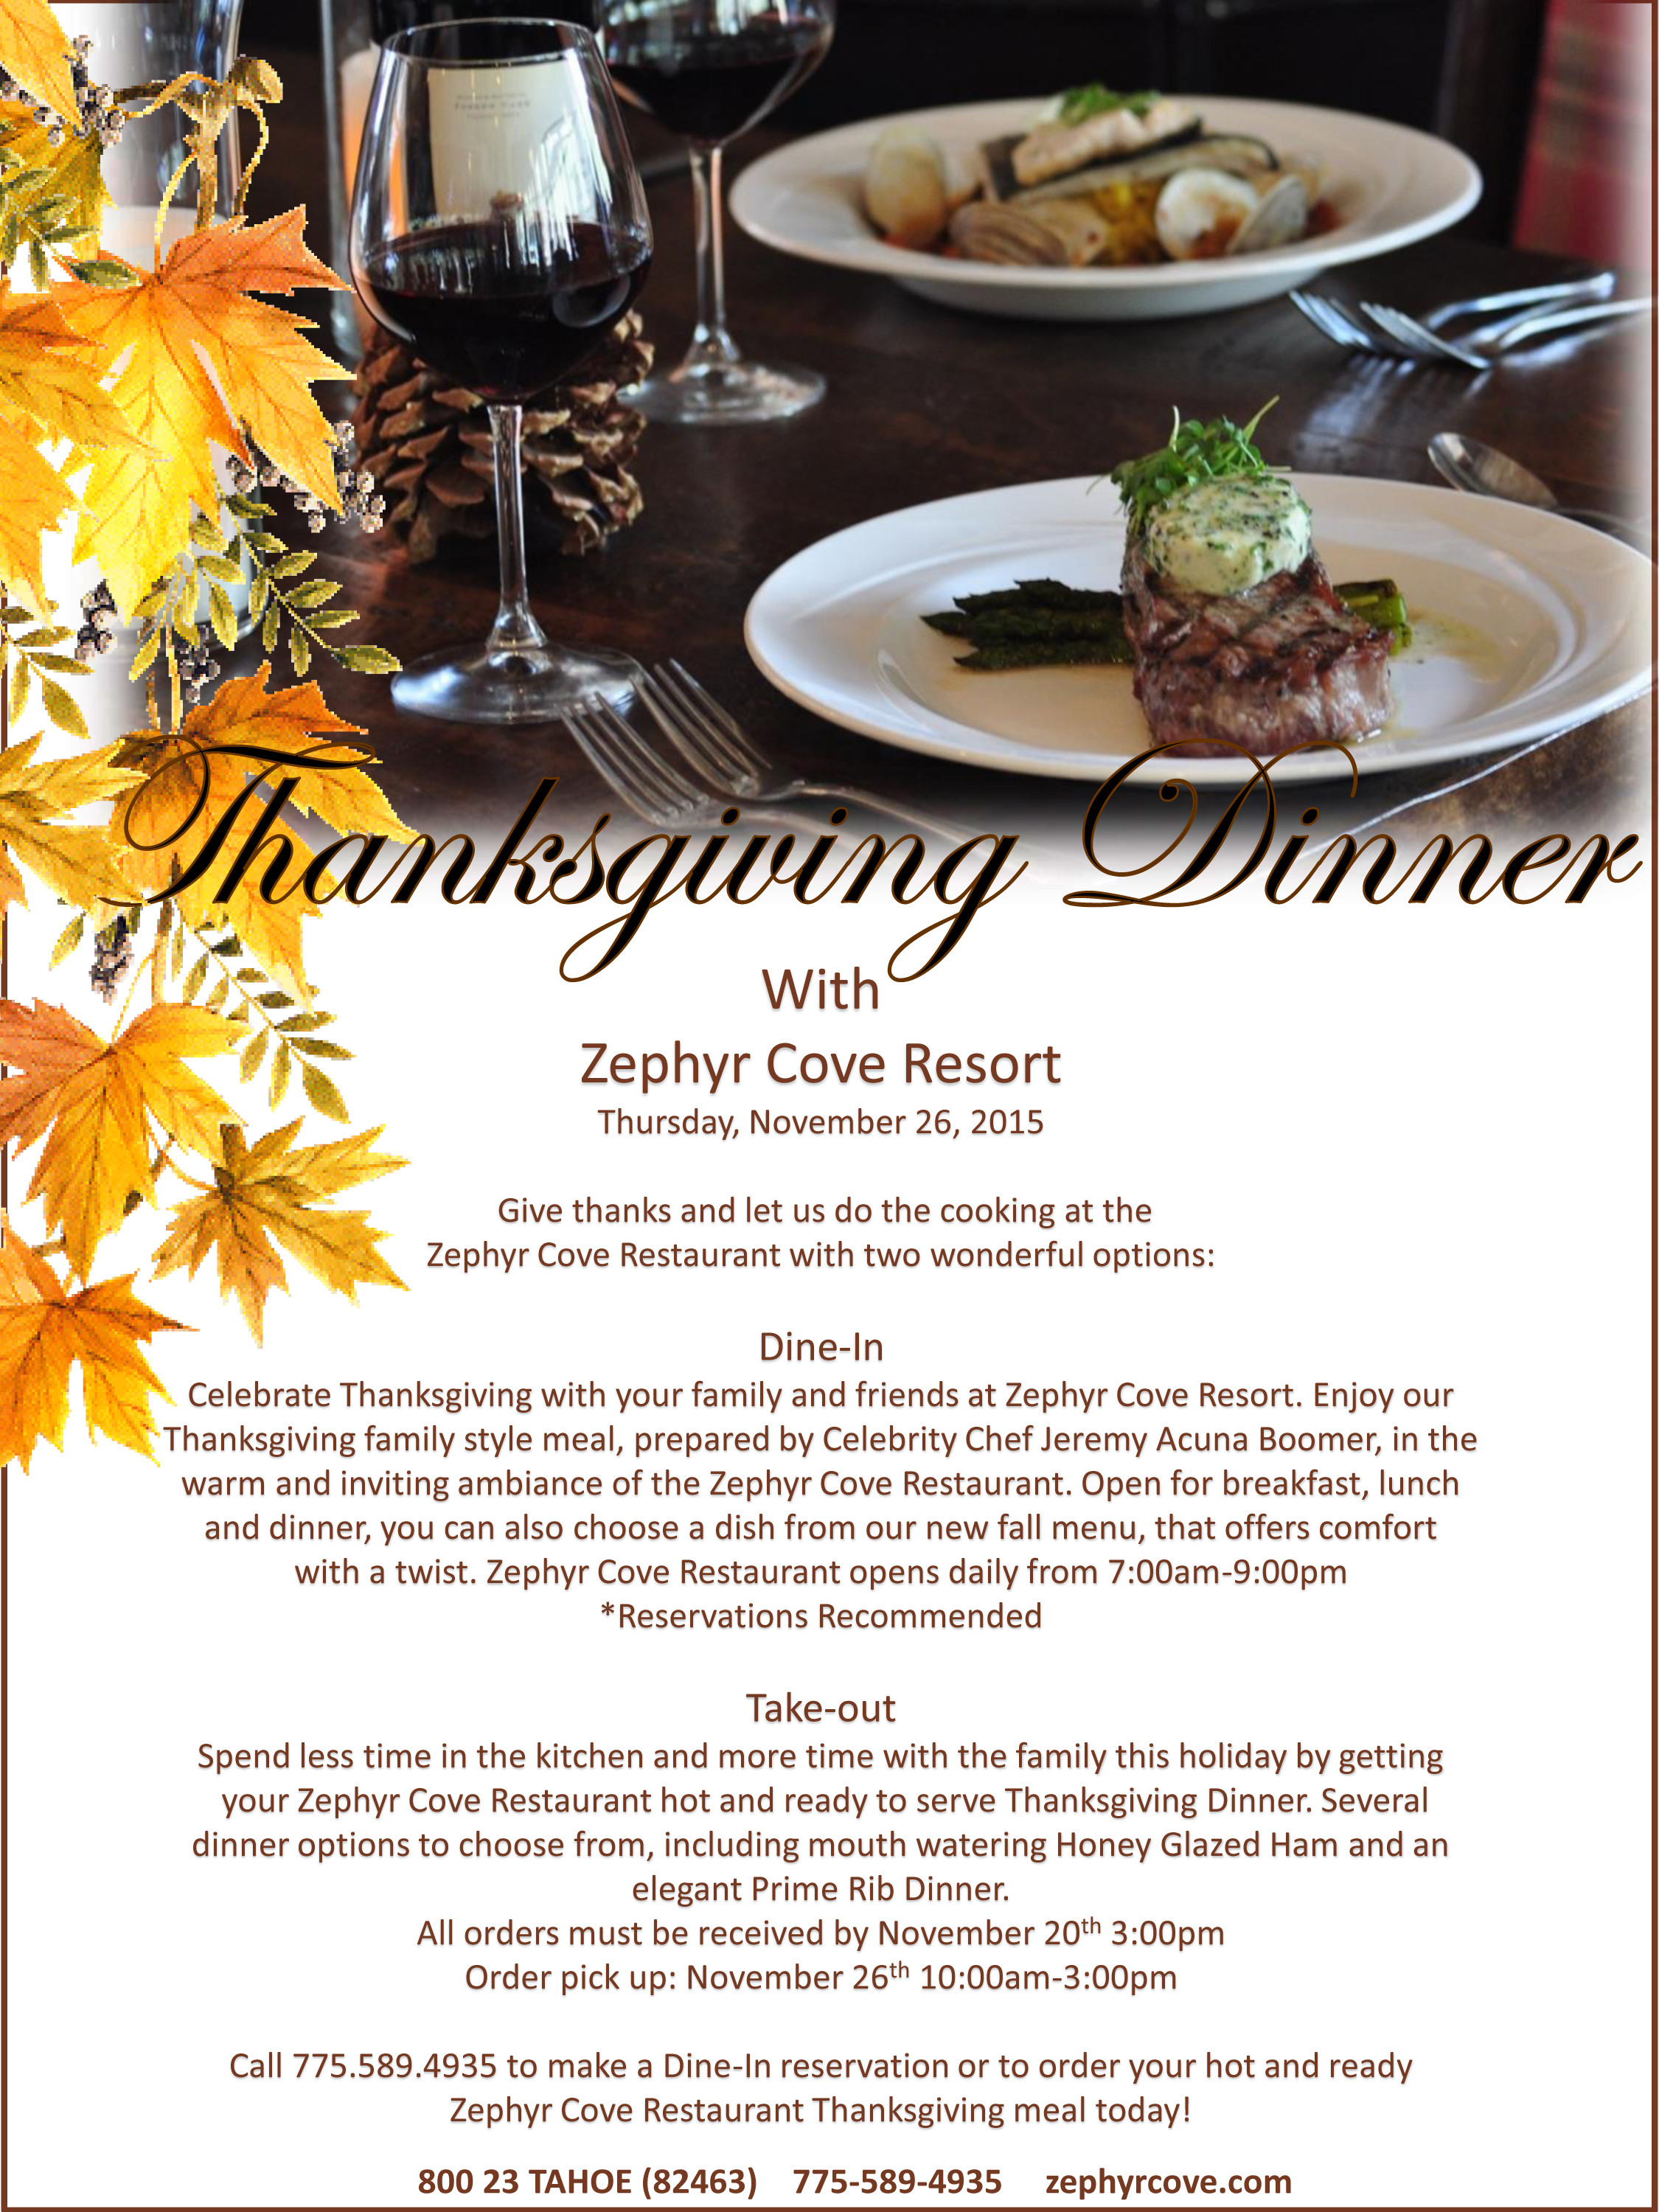 Restaurant Thanksgiving Dinner
 Thanksgiving Dinner at the Zephyr Cove Restaurant